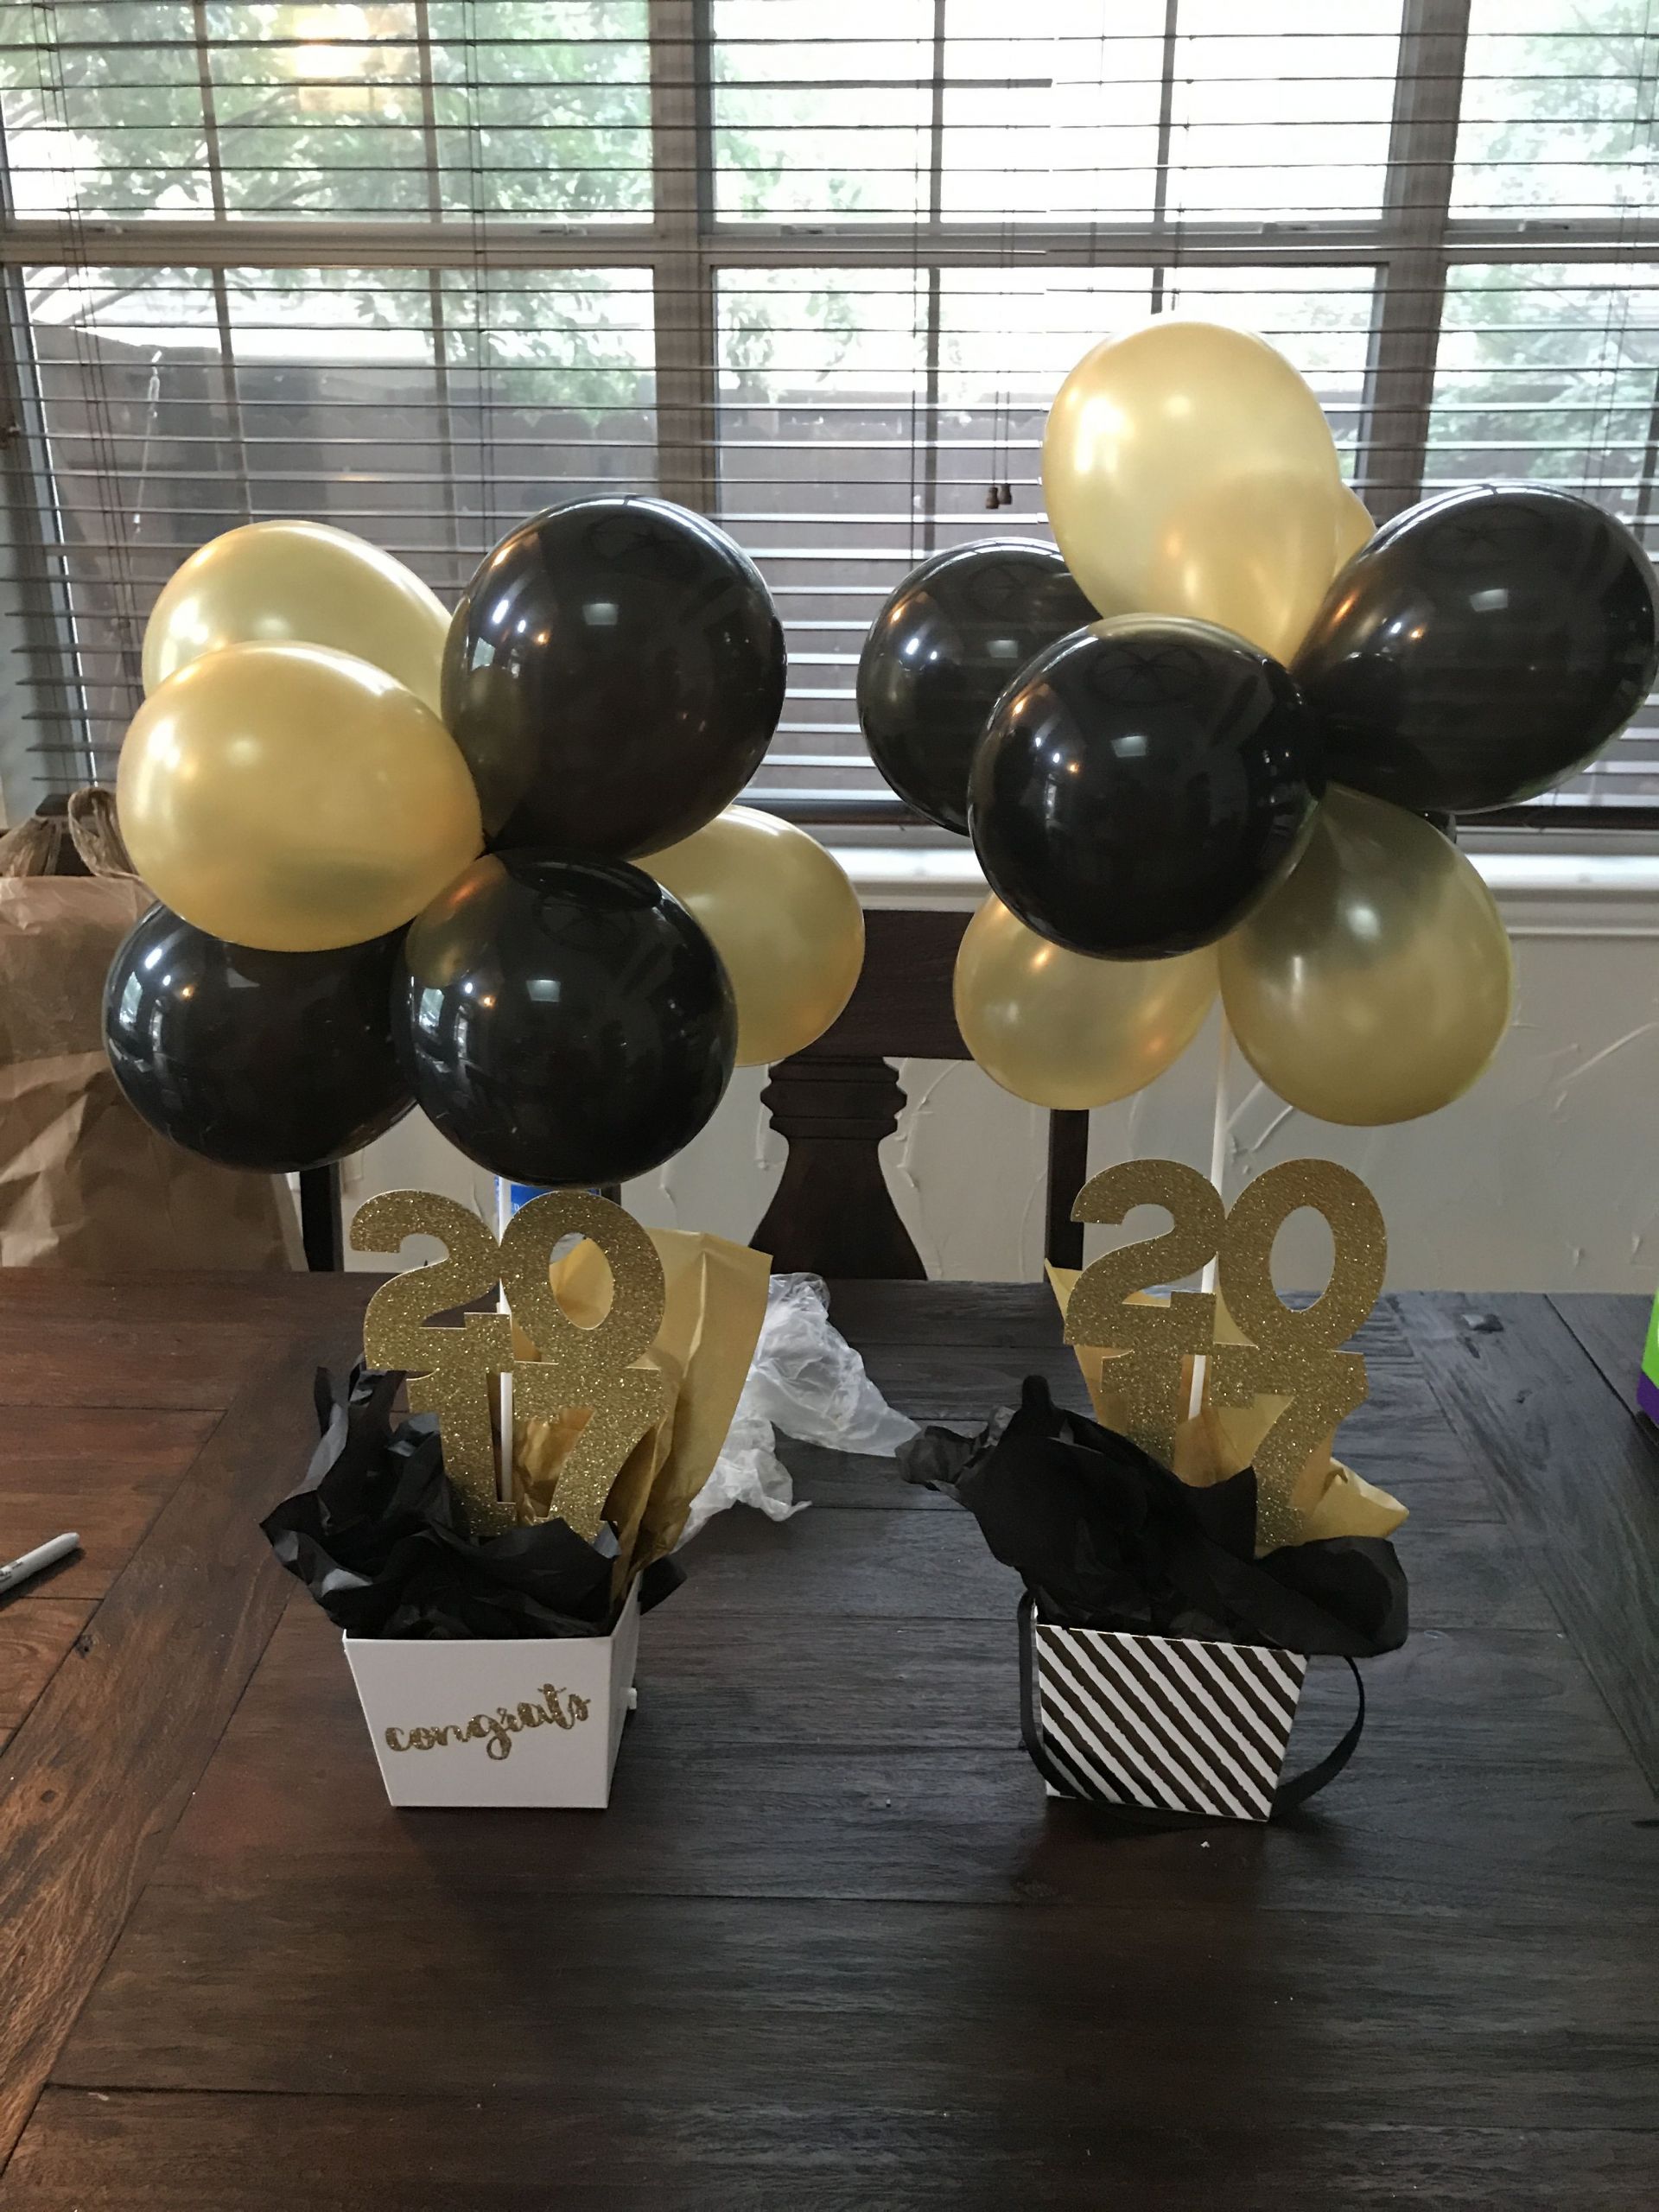 Graduation Party Balloon Ideas
 Balloons balls with 2017 Centerpieces